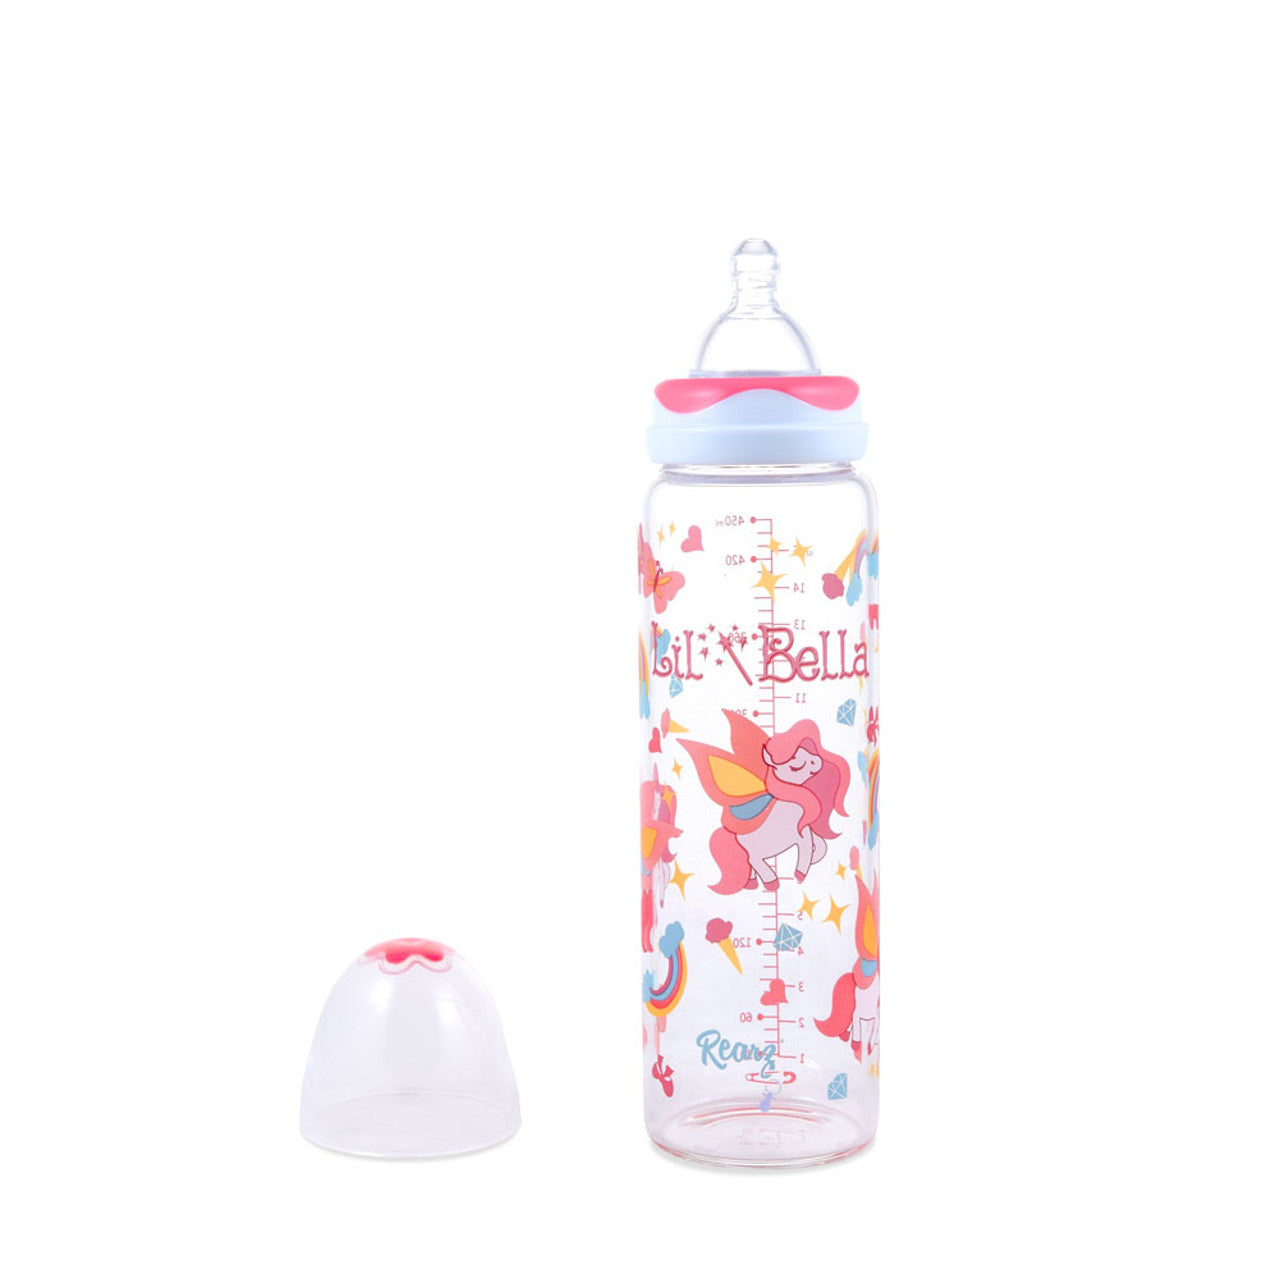 Rearz - Adult Baby Bottle - Lil' Bella